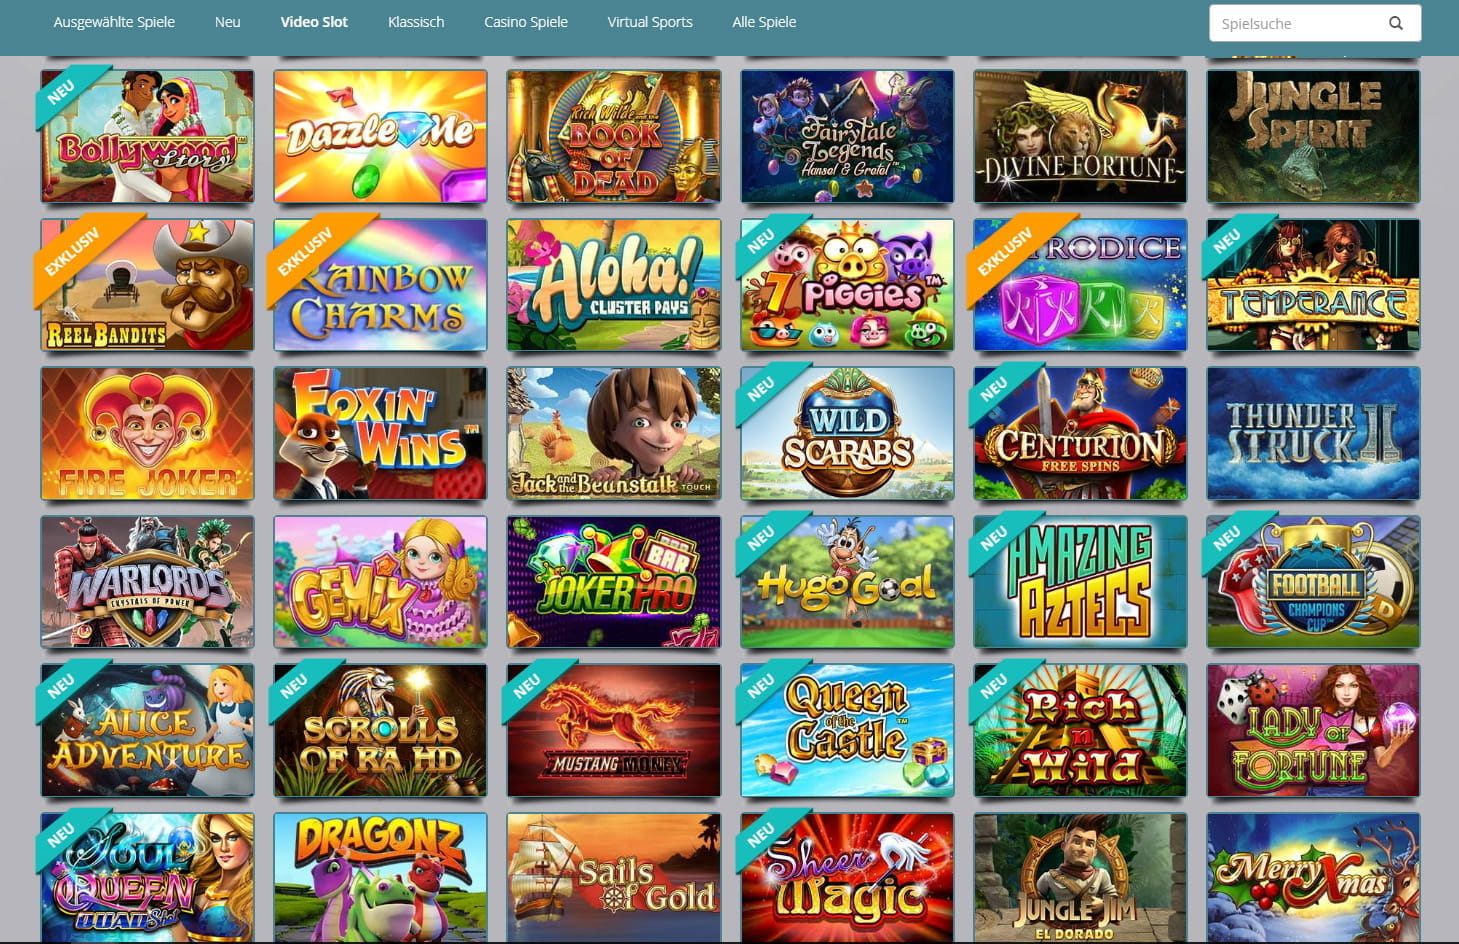 Karamba Online Casino - Kostenlos Jewel Spielen